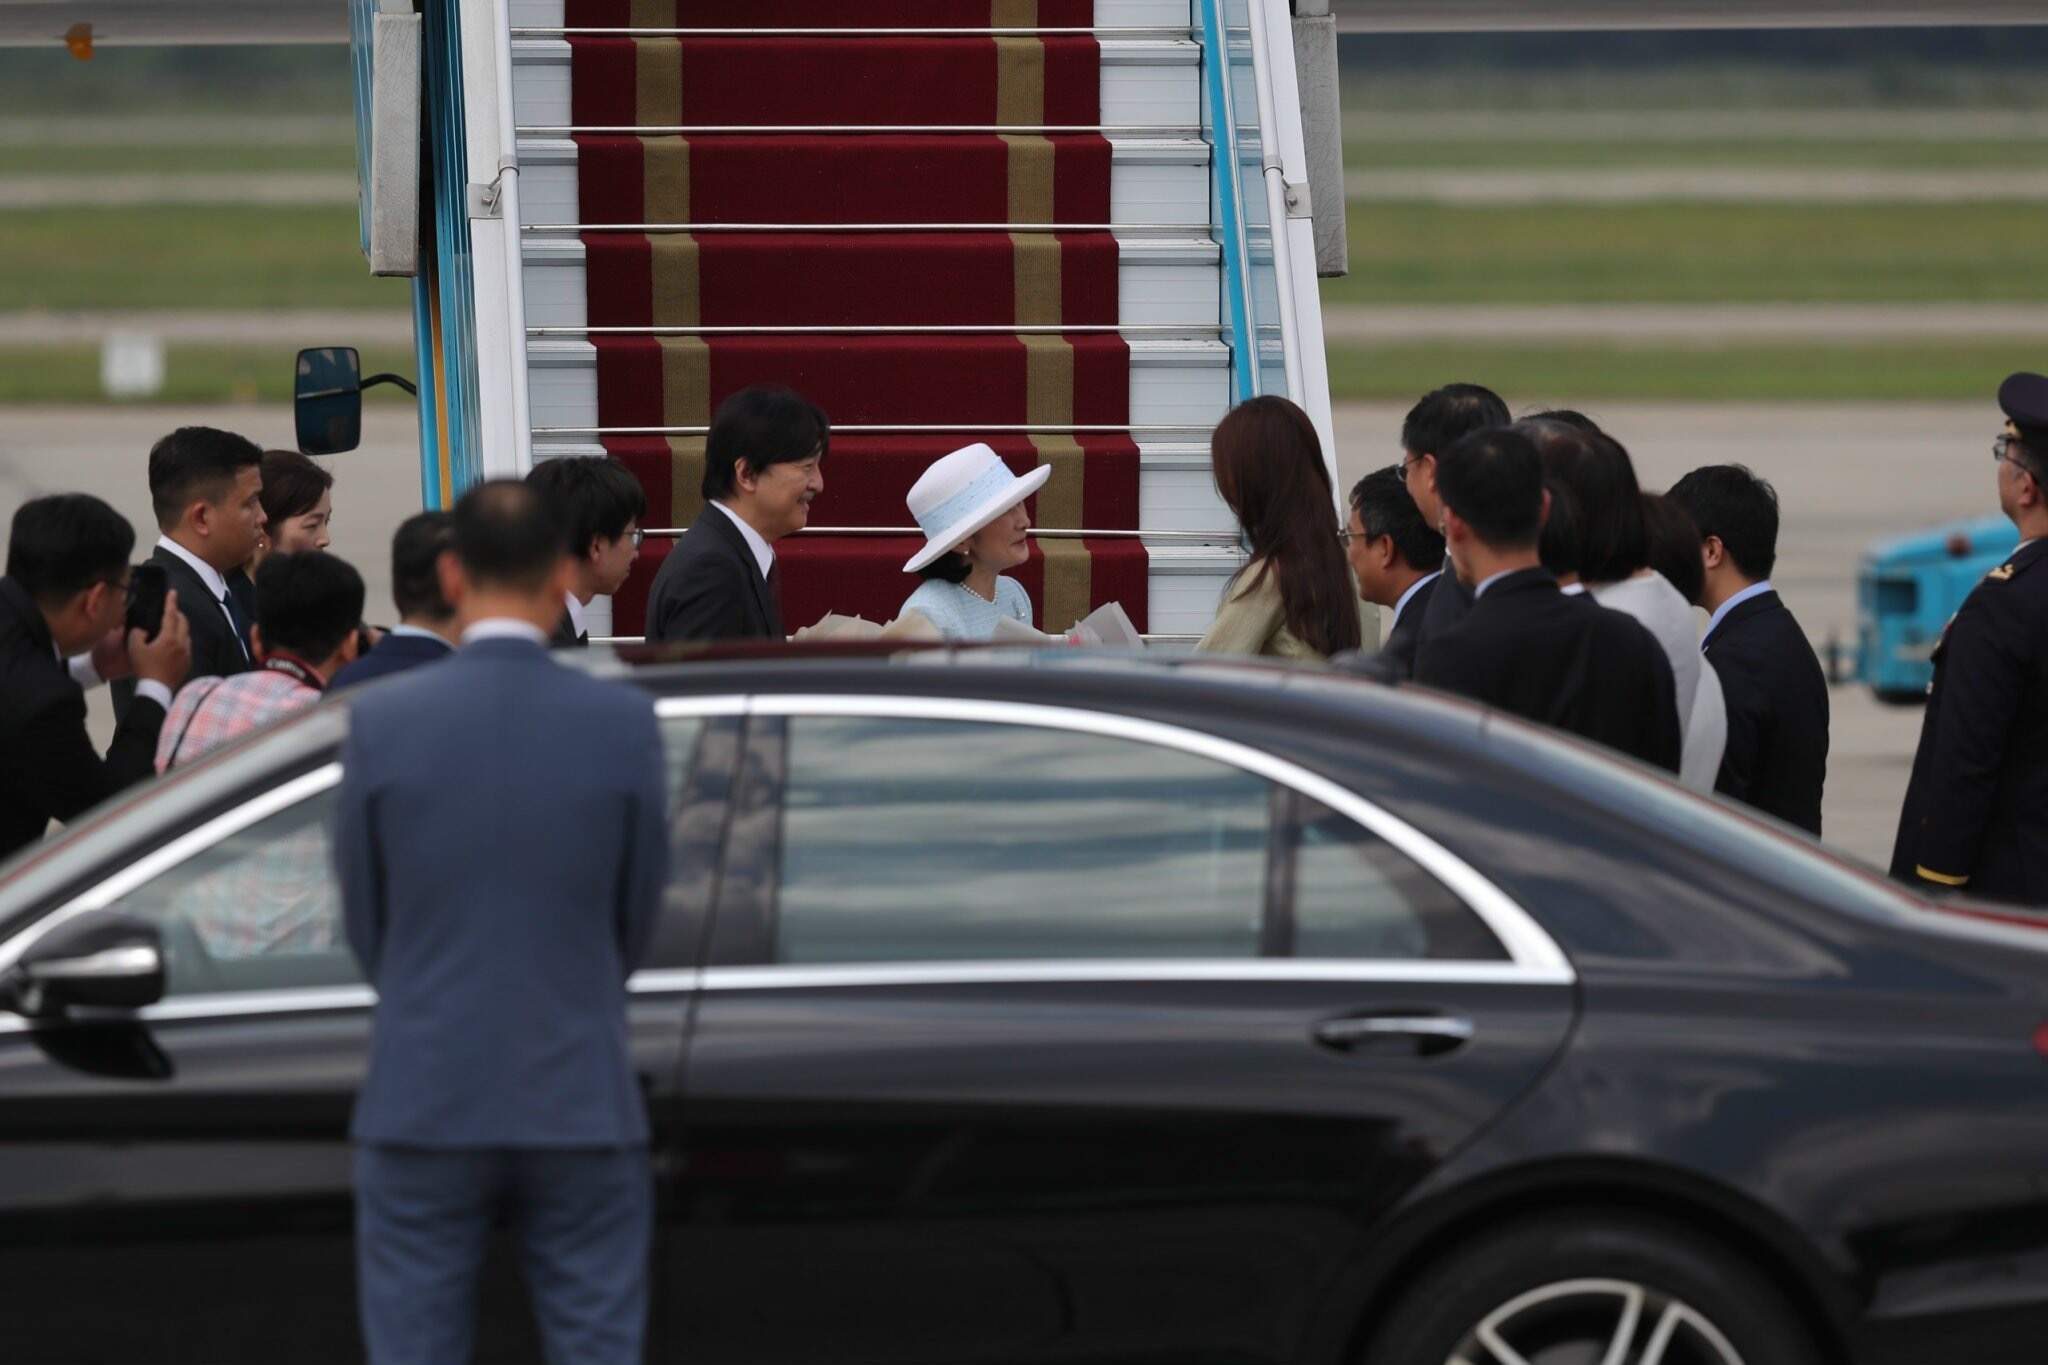 Chiều 20.9, Hoàng Thái tử Nhật Bản Akishino và Công nương Kiko đã đến thủ đô Hà Nội, bắt đầu thăm chính thức Việt Nam. Ảnh: Hải Nguyễn